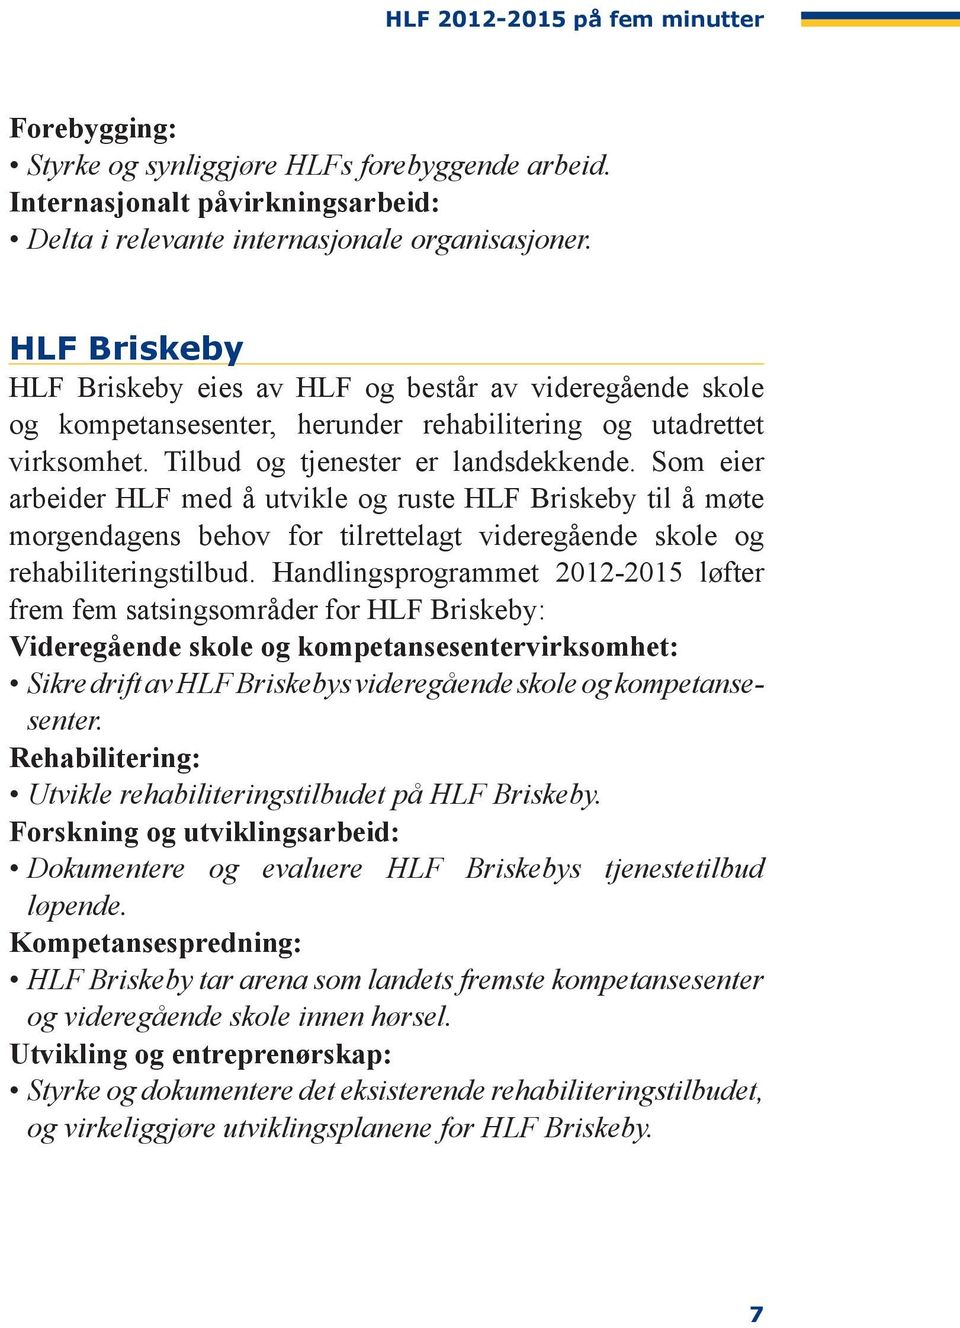 Som eier arbeider HLF med å utvikle og ruste HLF Briskeby til å møte morgen dagens behov for tilrettelagt videregående skole og rehabiliterings tilbud.